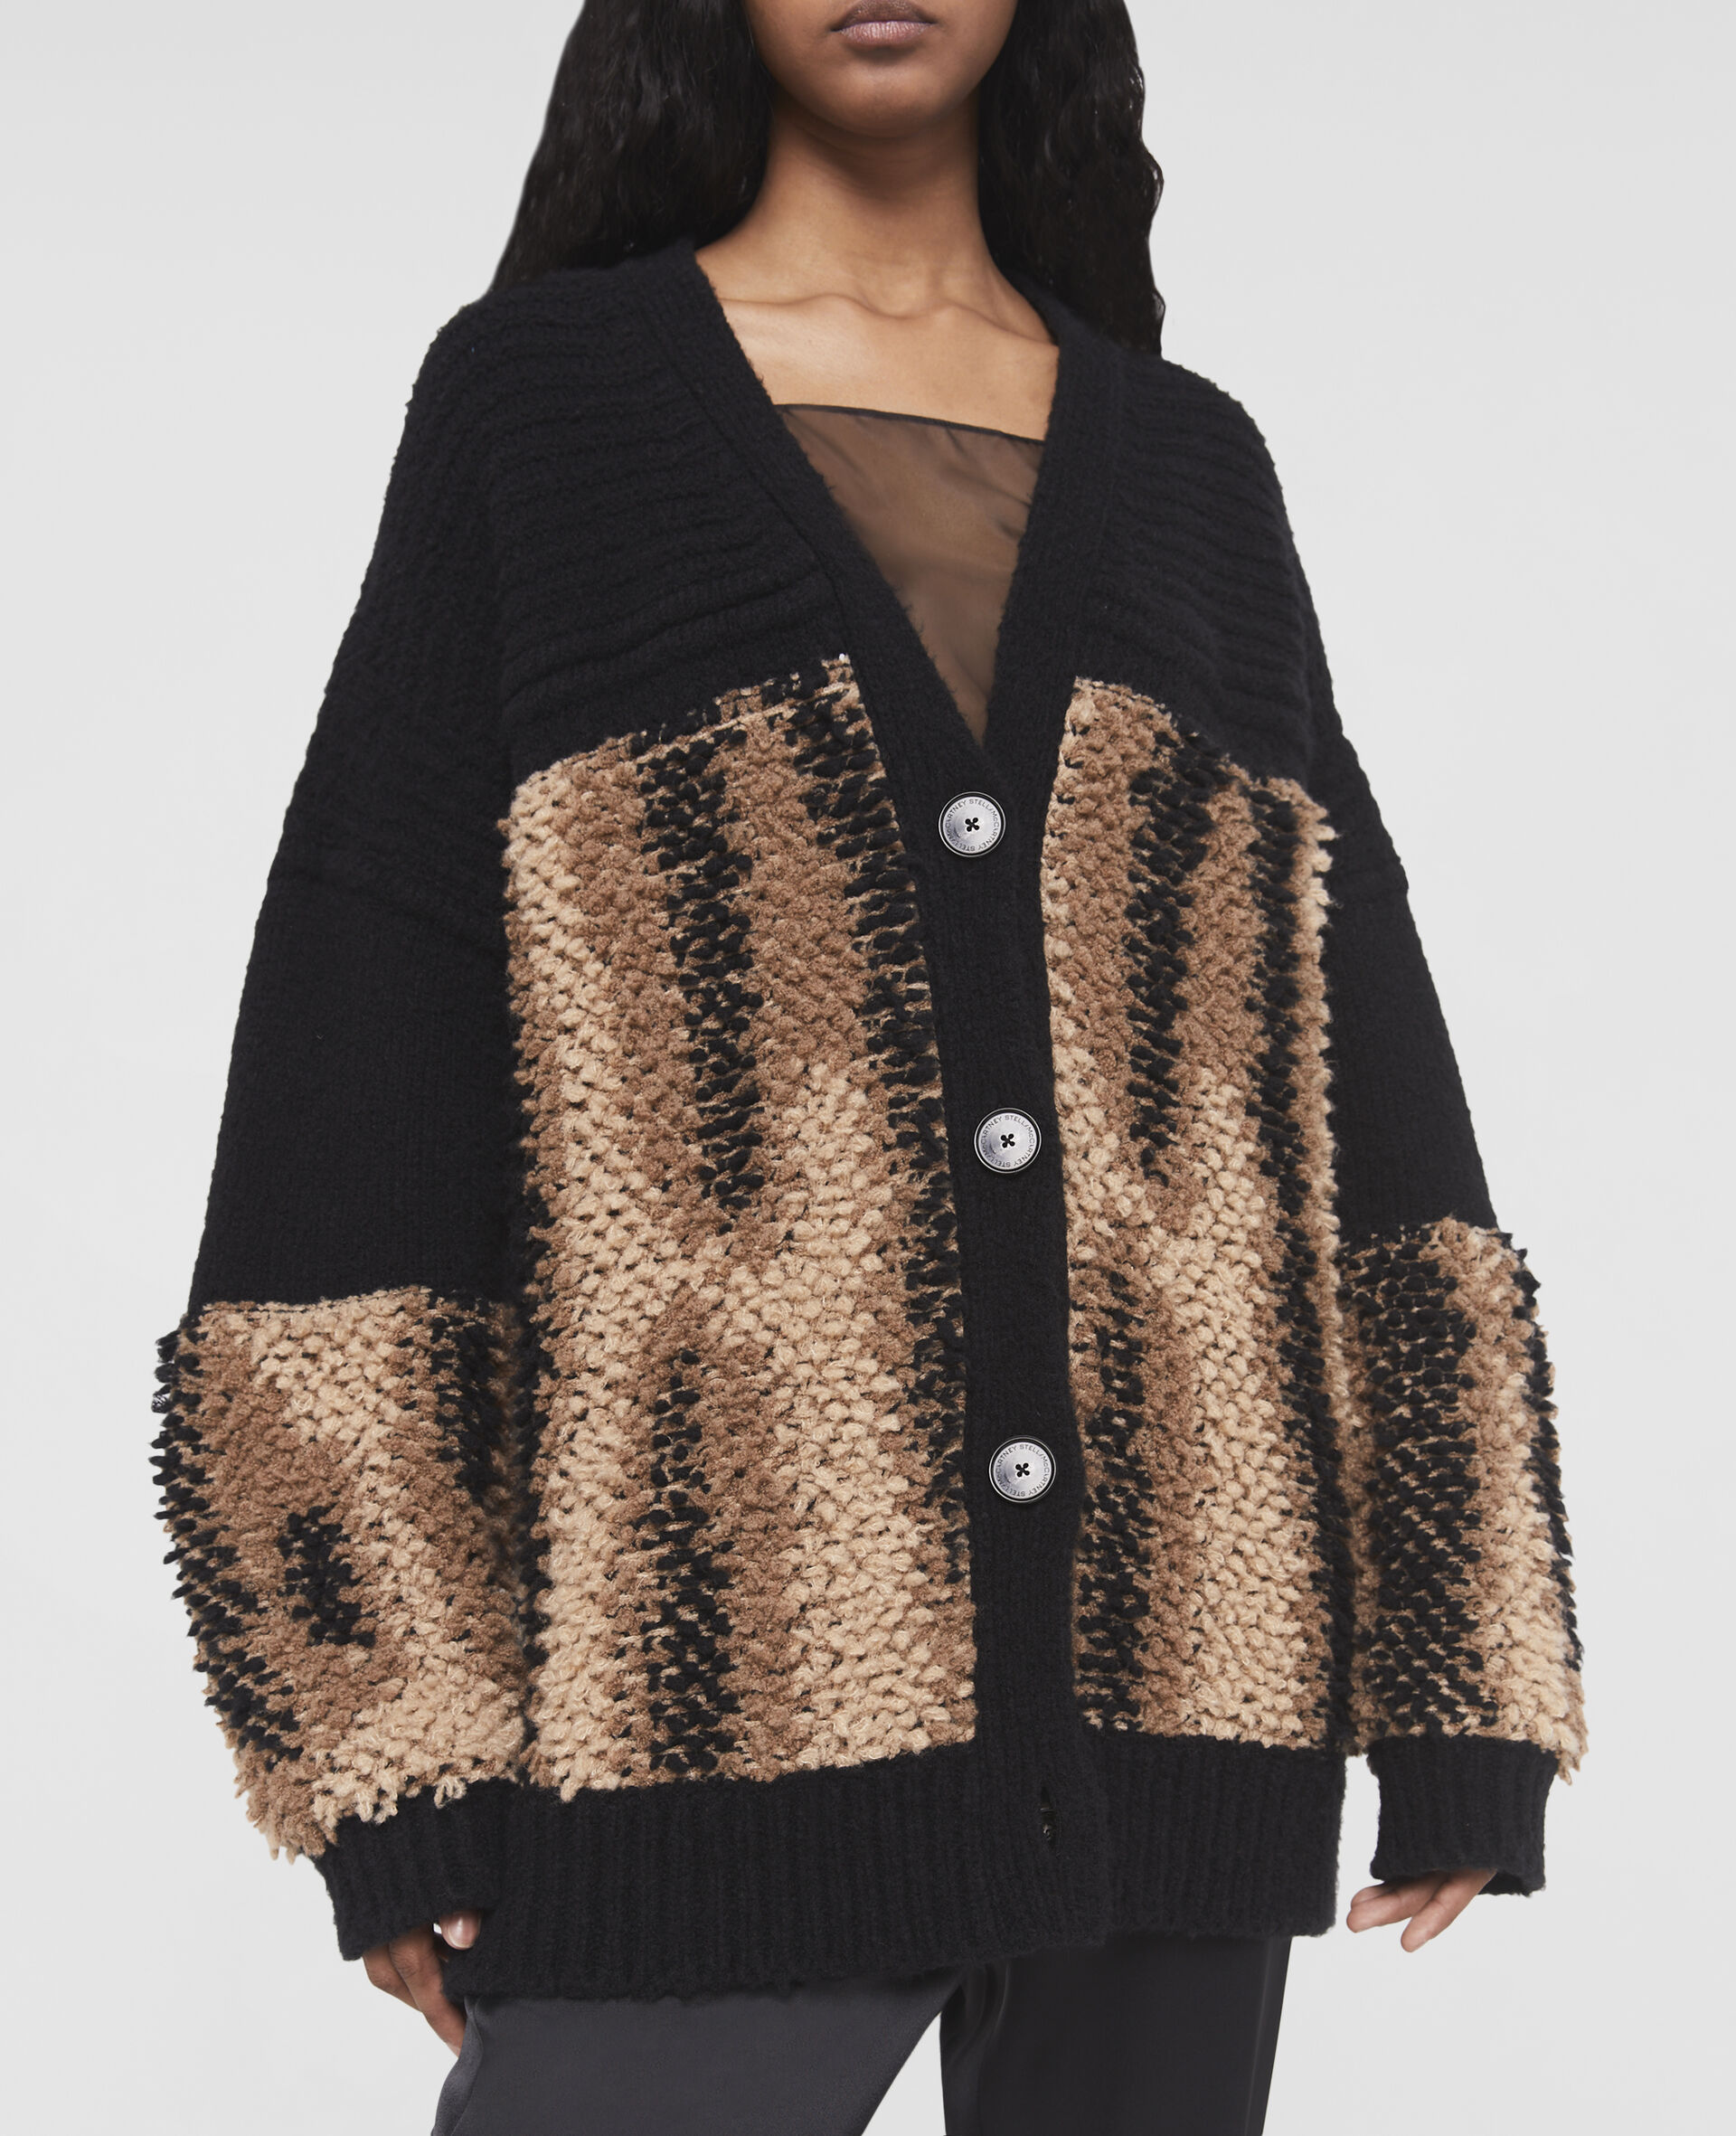 Fur Free Fur Panel Textured Knit Cardigan-Black-large image number 3